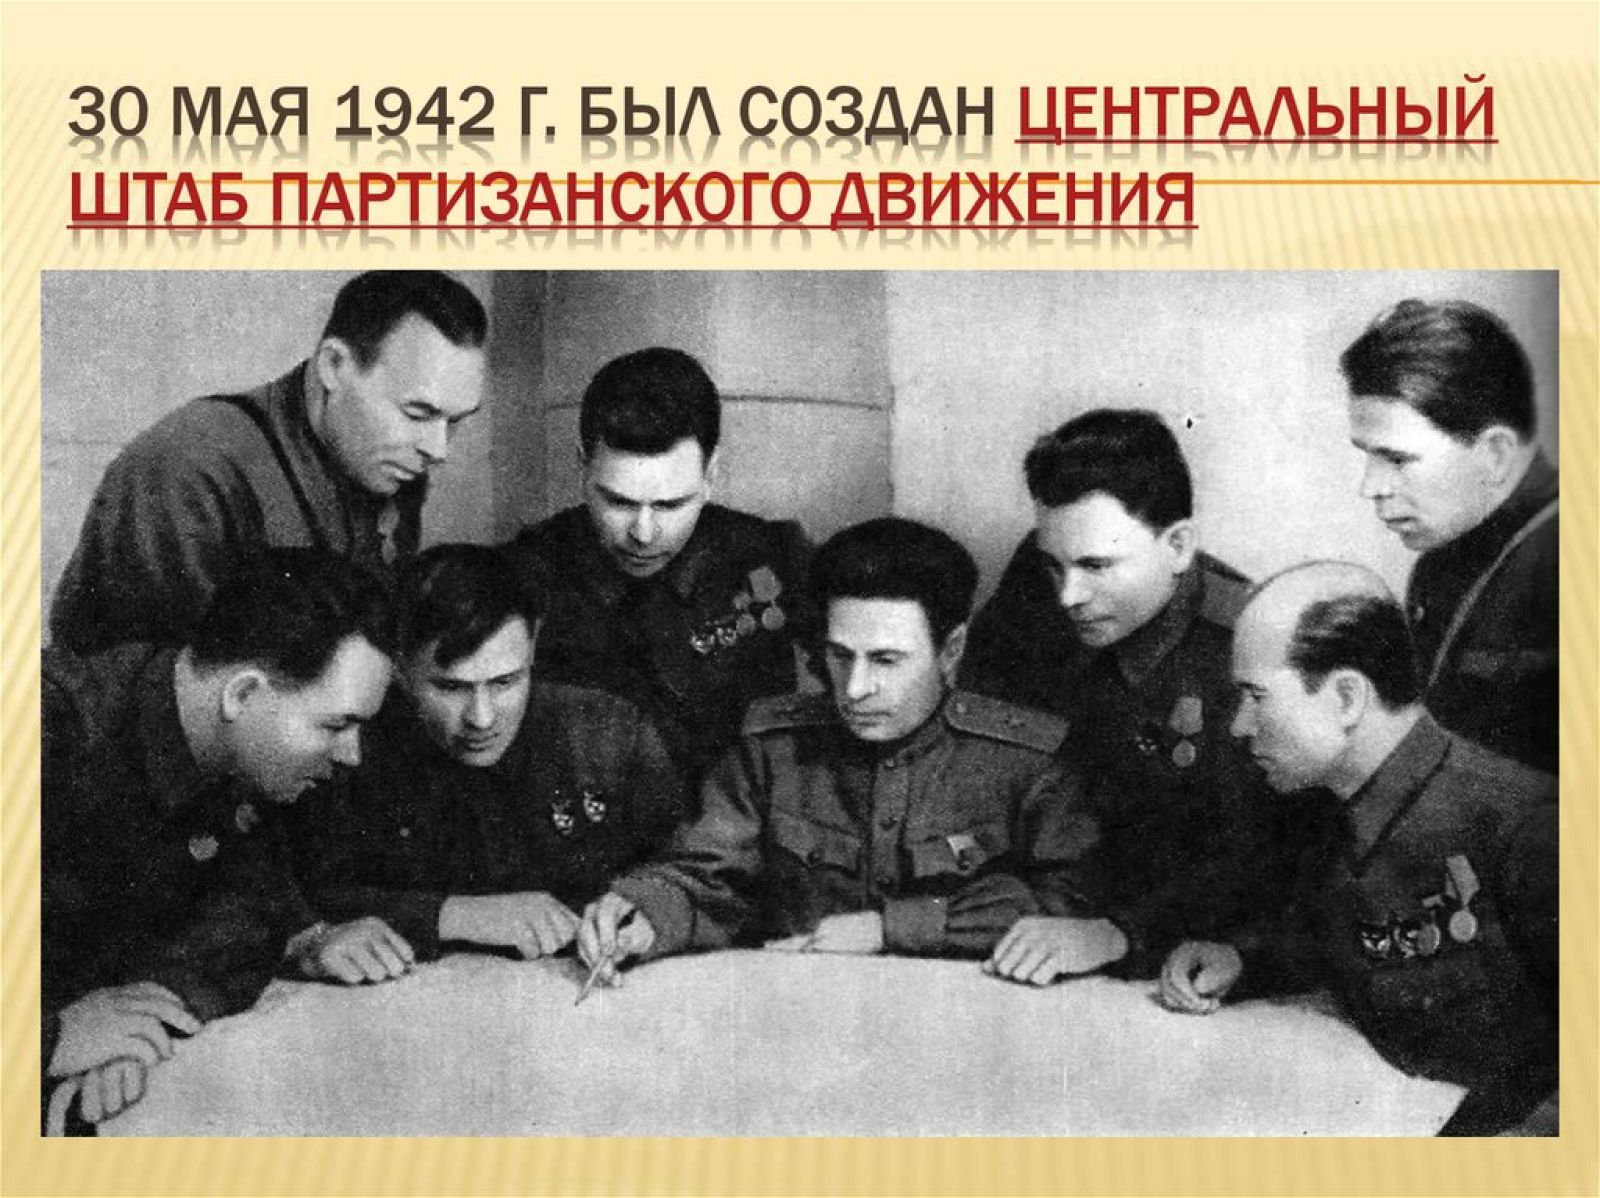 30 Мая 1942 года создан Центральный штаб партизанского движения. 30 Мая центрального штаба партизанского движения. Центральный штаб Партизан 1942 год. Партизанский штаб 1942 возглавил. 1 мая 1942 г